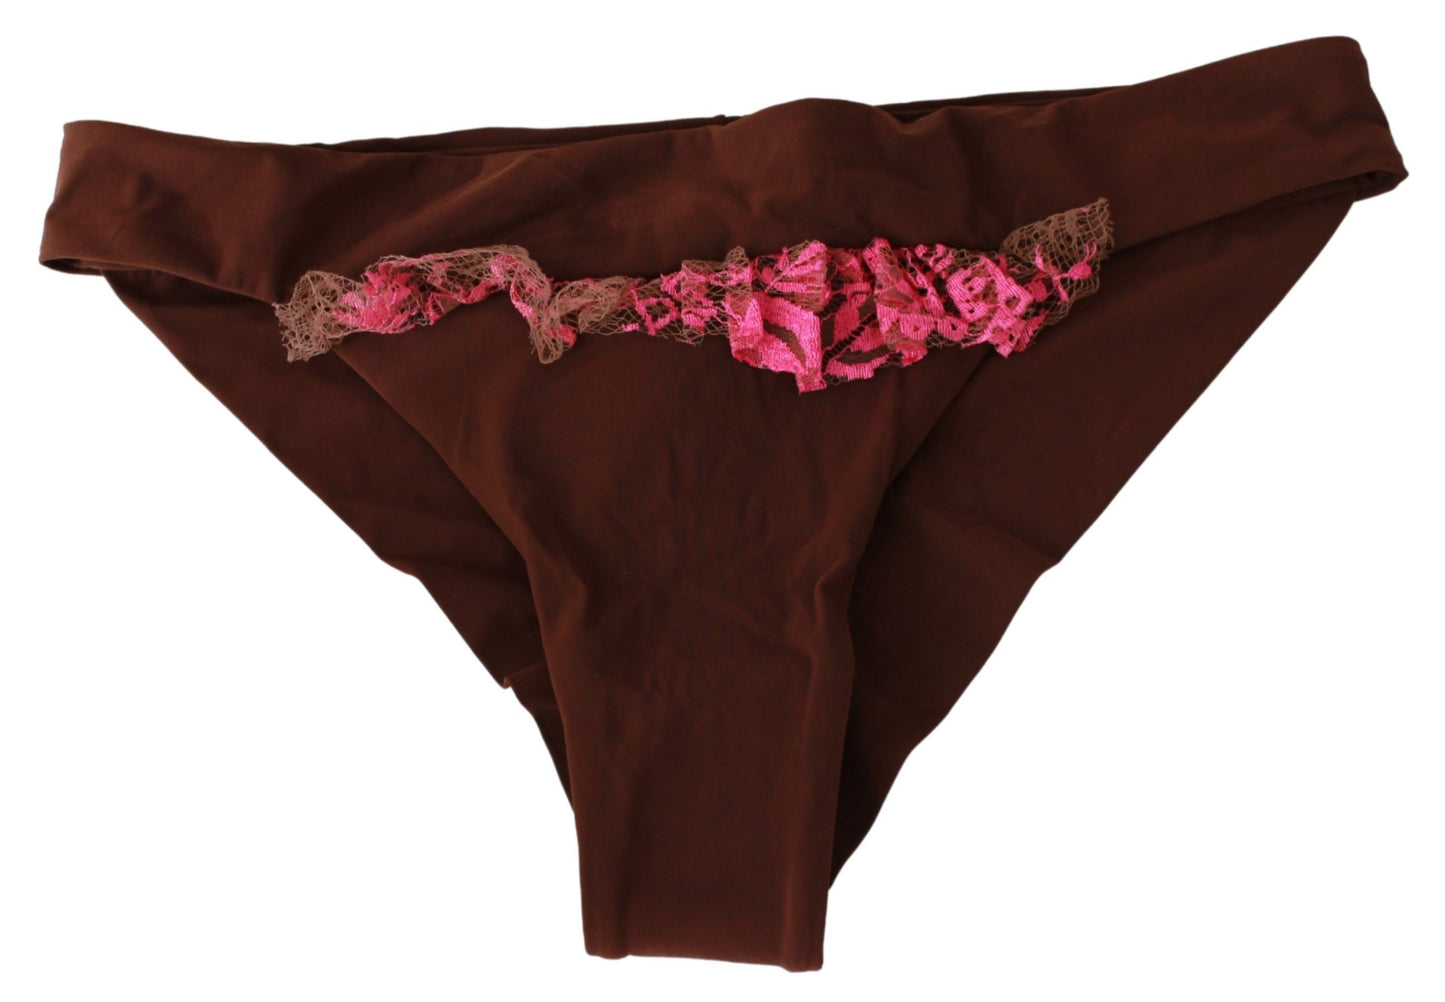 Souvenirs roses bruns rose en deux pièces de maillot de bain plage